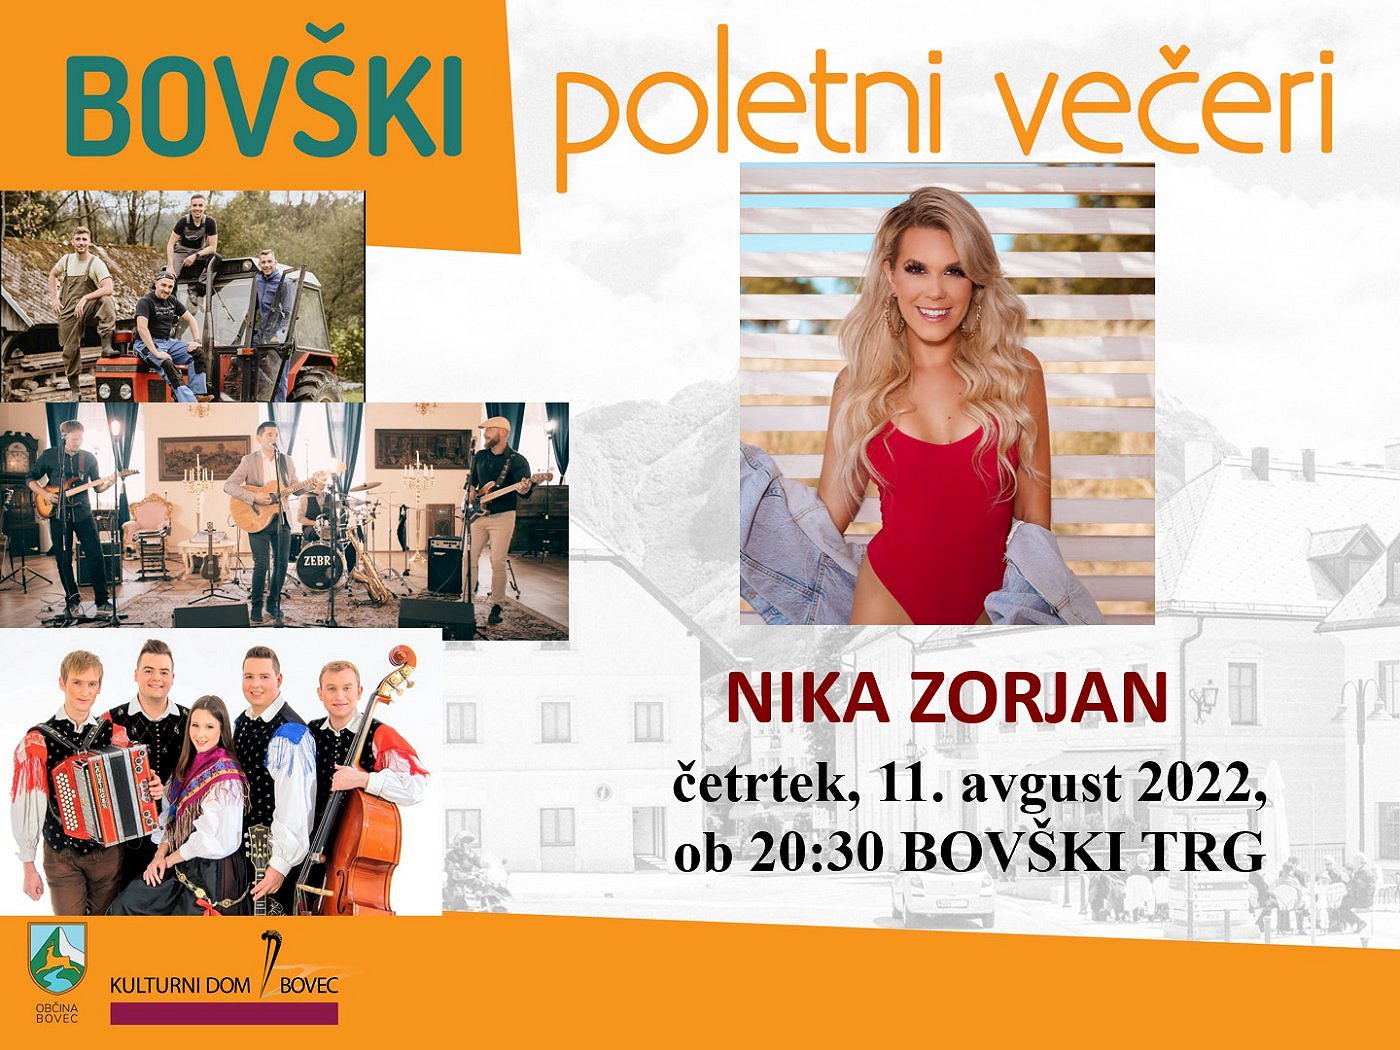 Bovški poletni večeri 2022 - Nika Zorjan